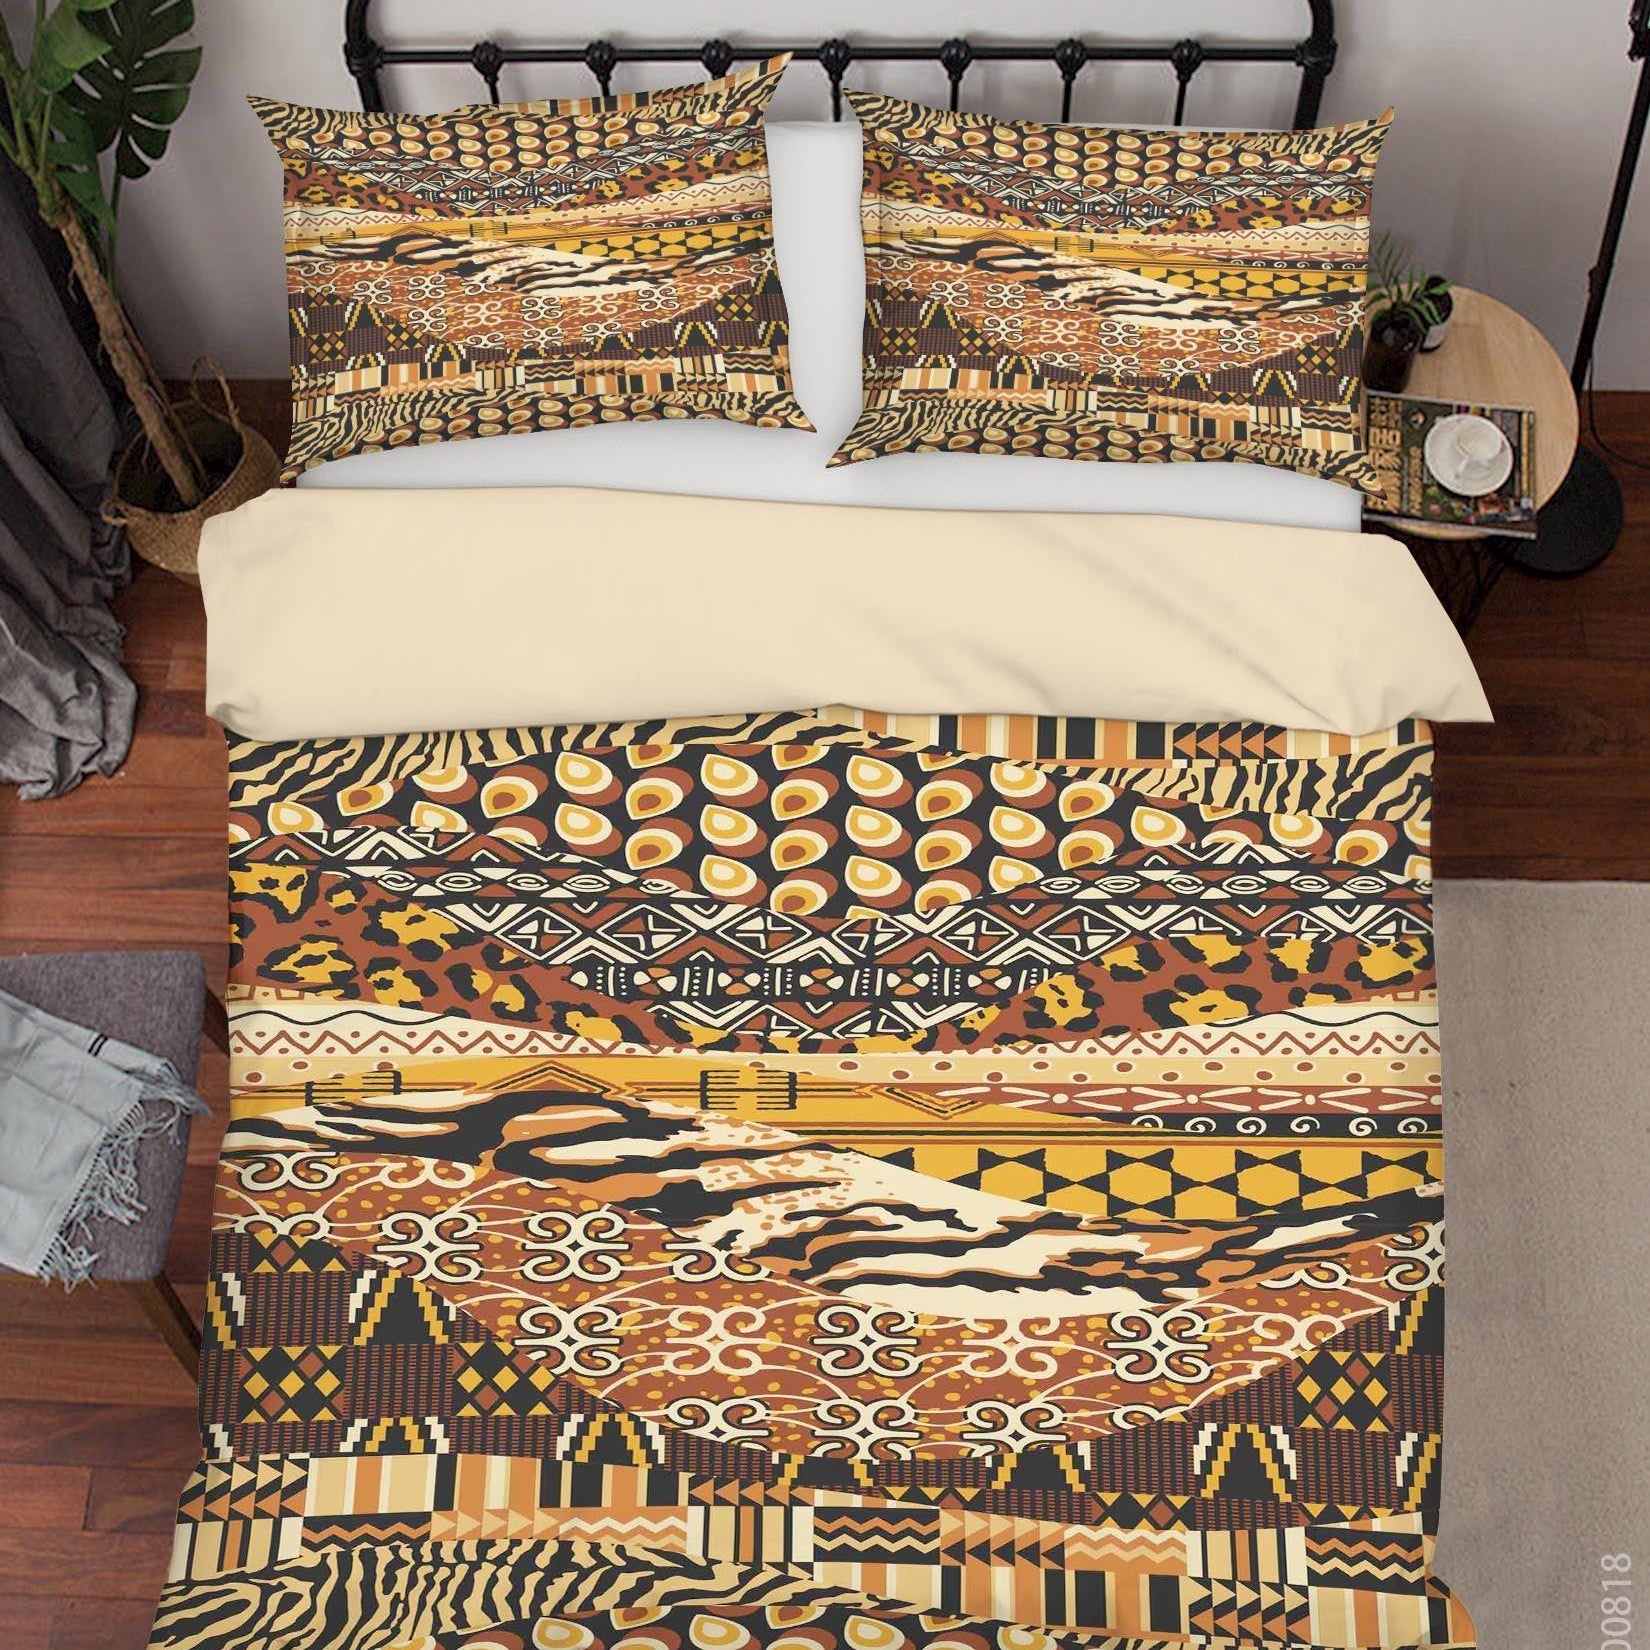 3D Vintage Painting Quilt Cover Set Bedding Set Duvet Cover Pillowcases LXL- Jess Art Decoration